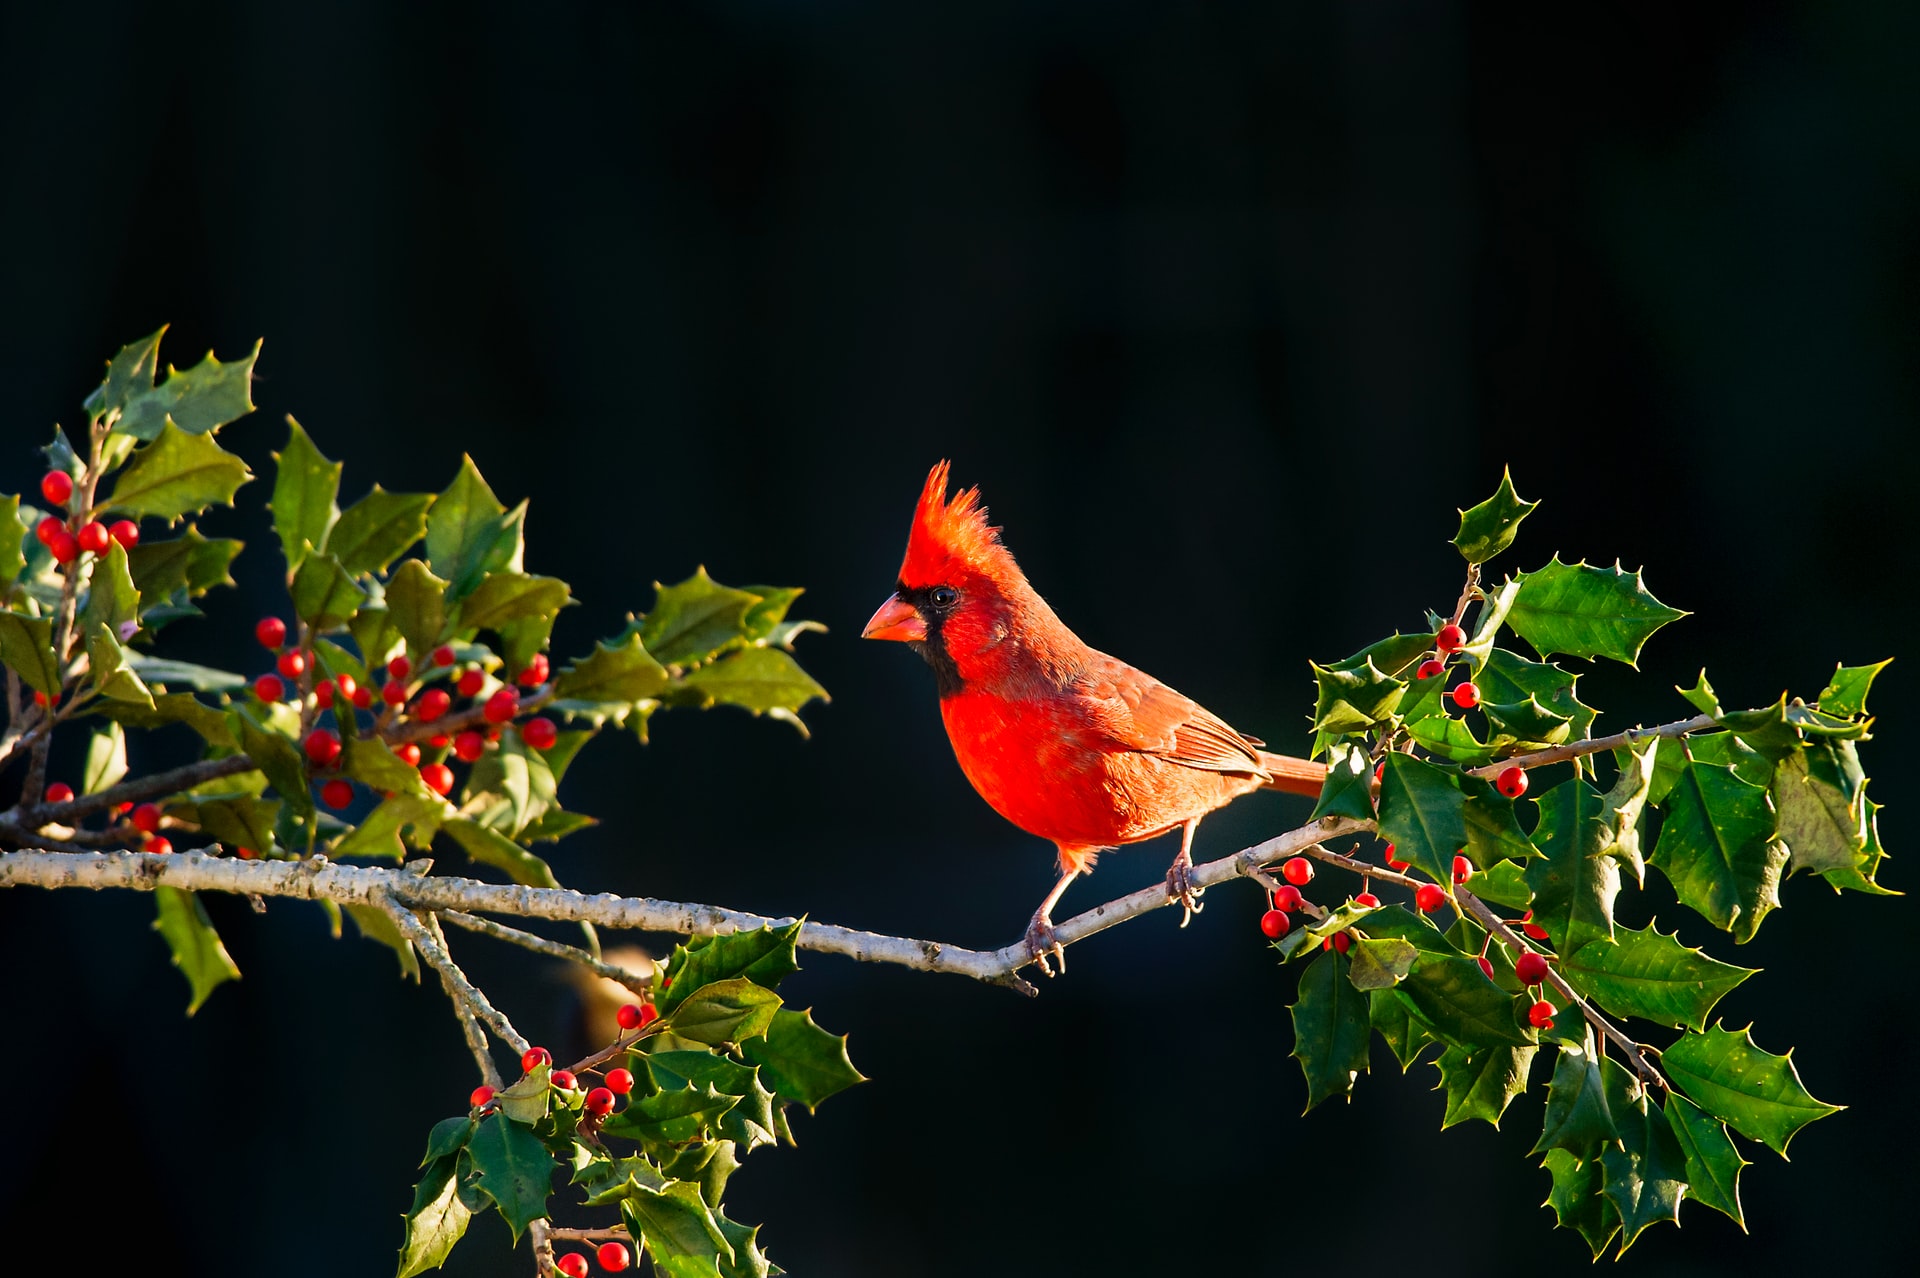 Do Cardinals Mate for Life?